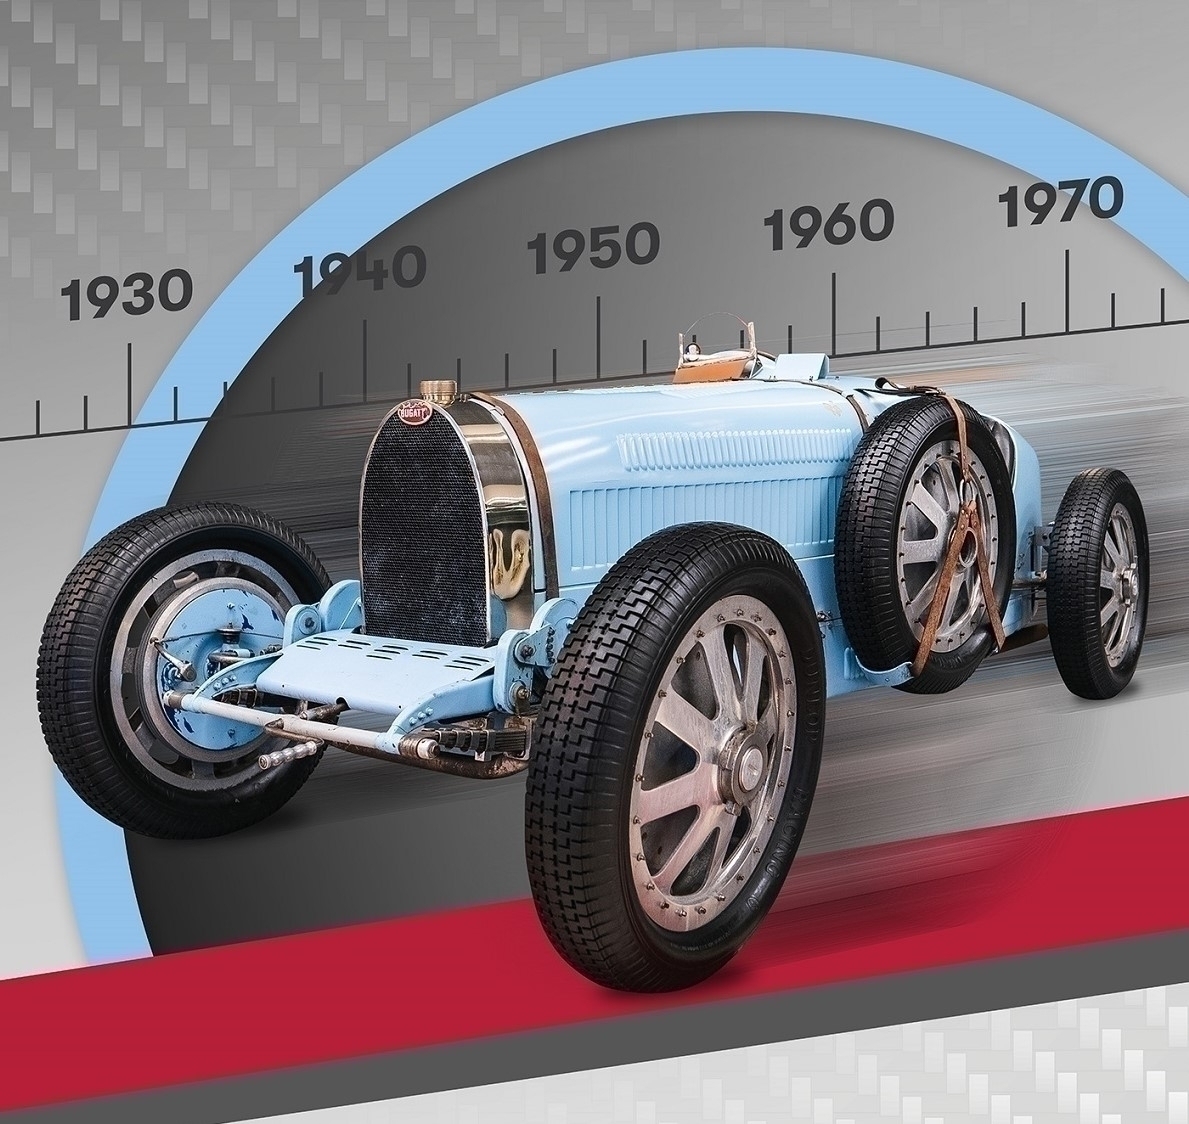 Музей «Игора Драйв» приглашает на обновленную интерактивную экспозицию ретро автомобилей